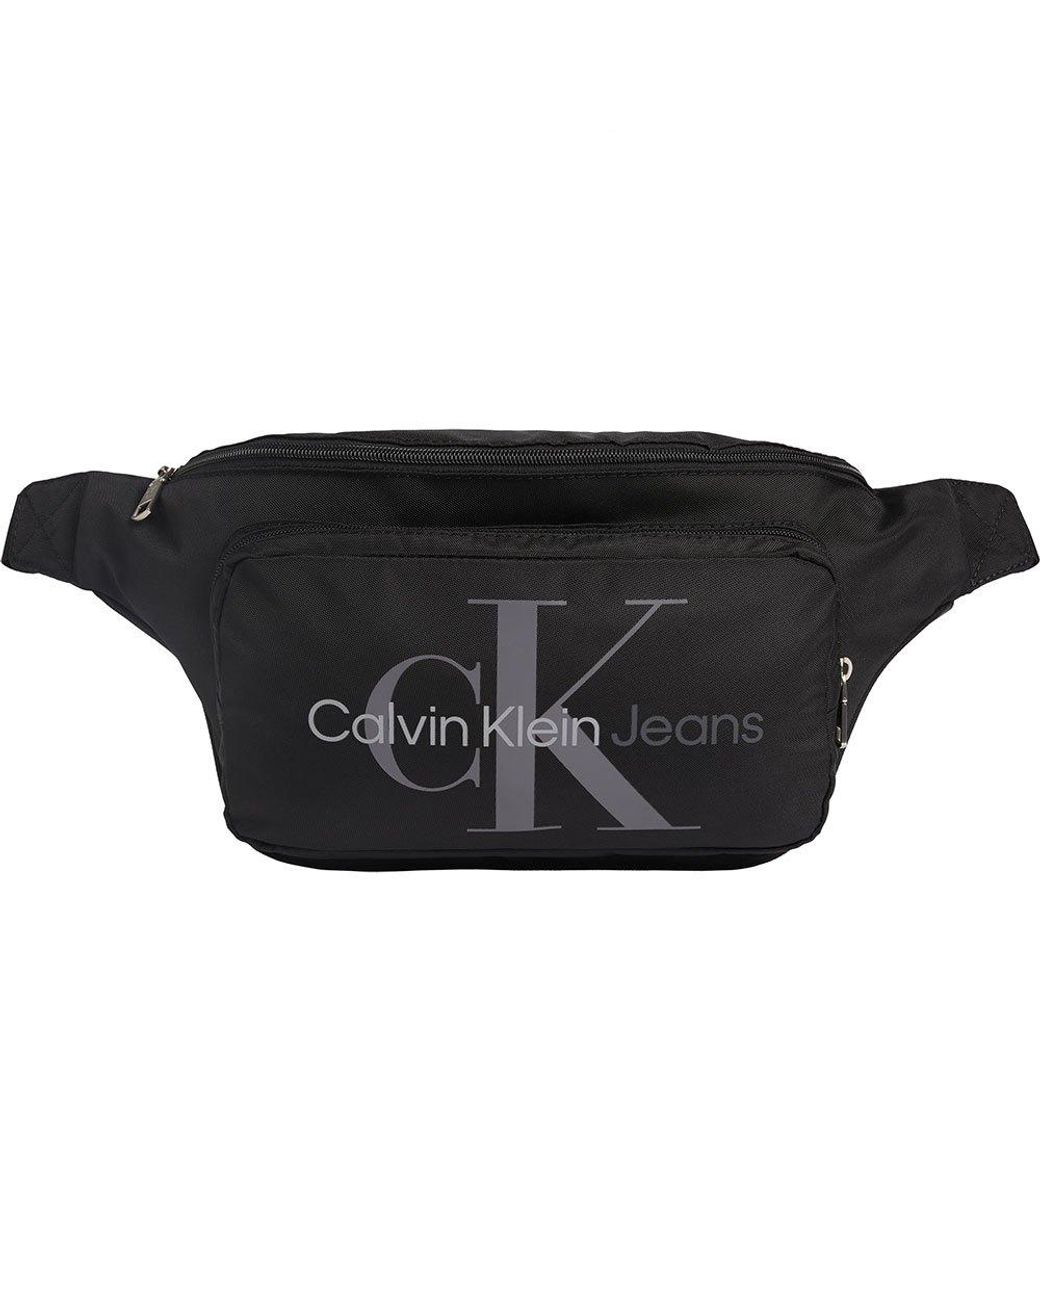 Calvin Klein Sport Essentials Waist Pack in Black | Lyst